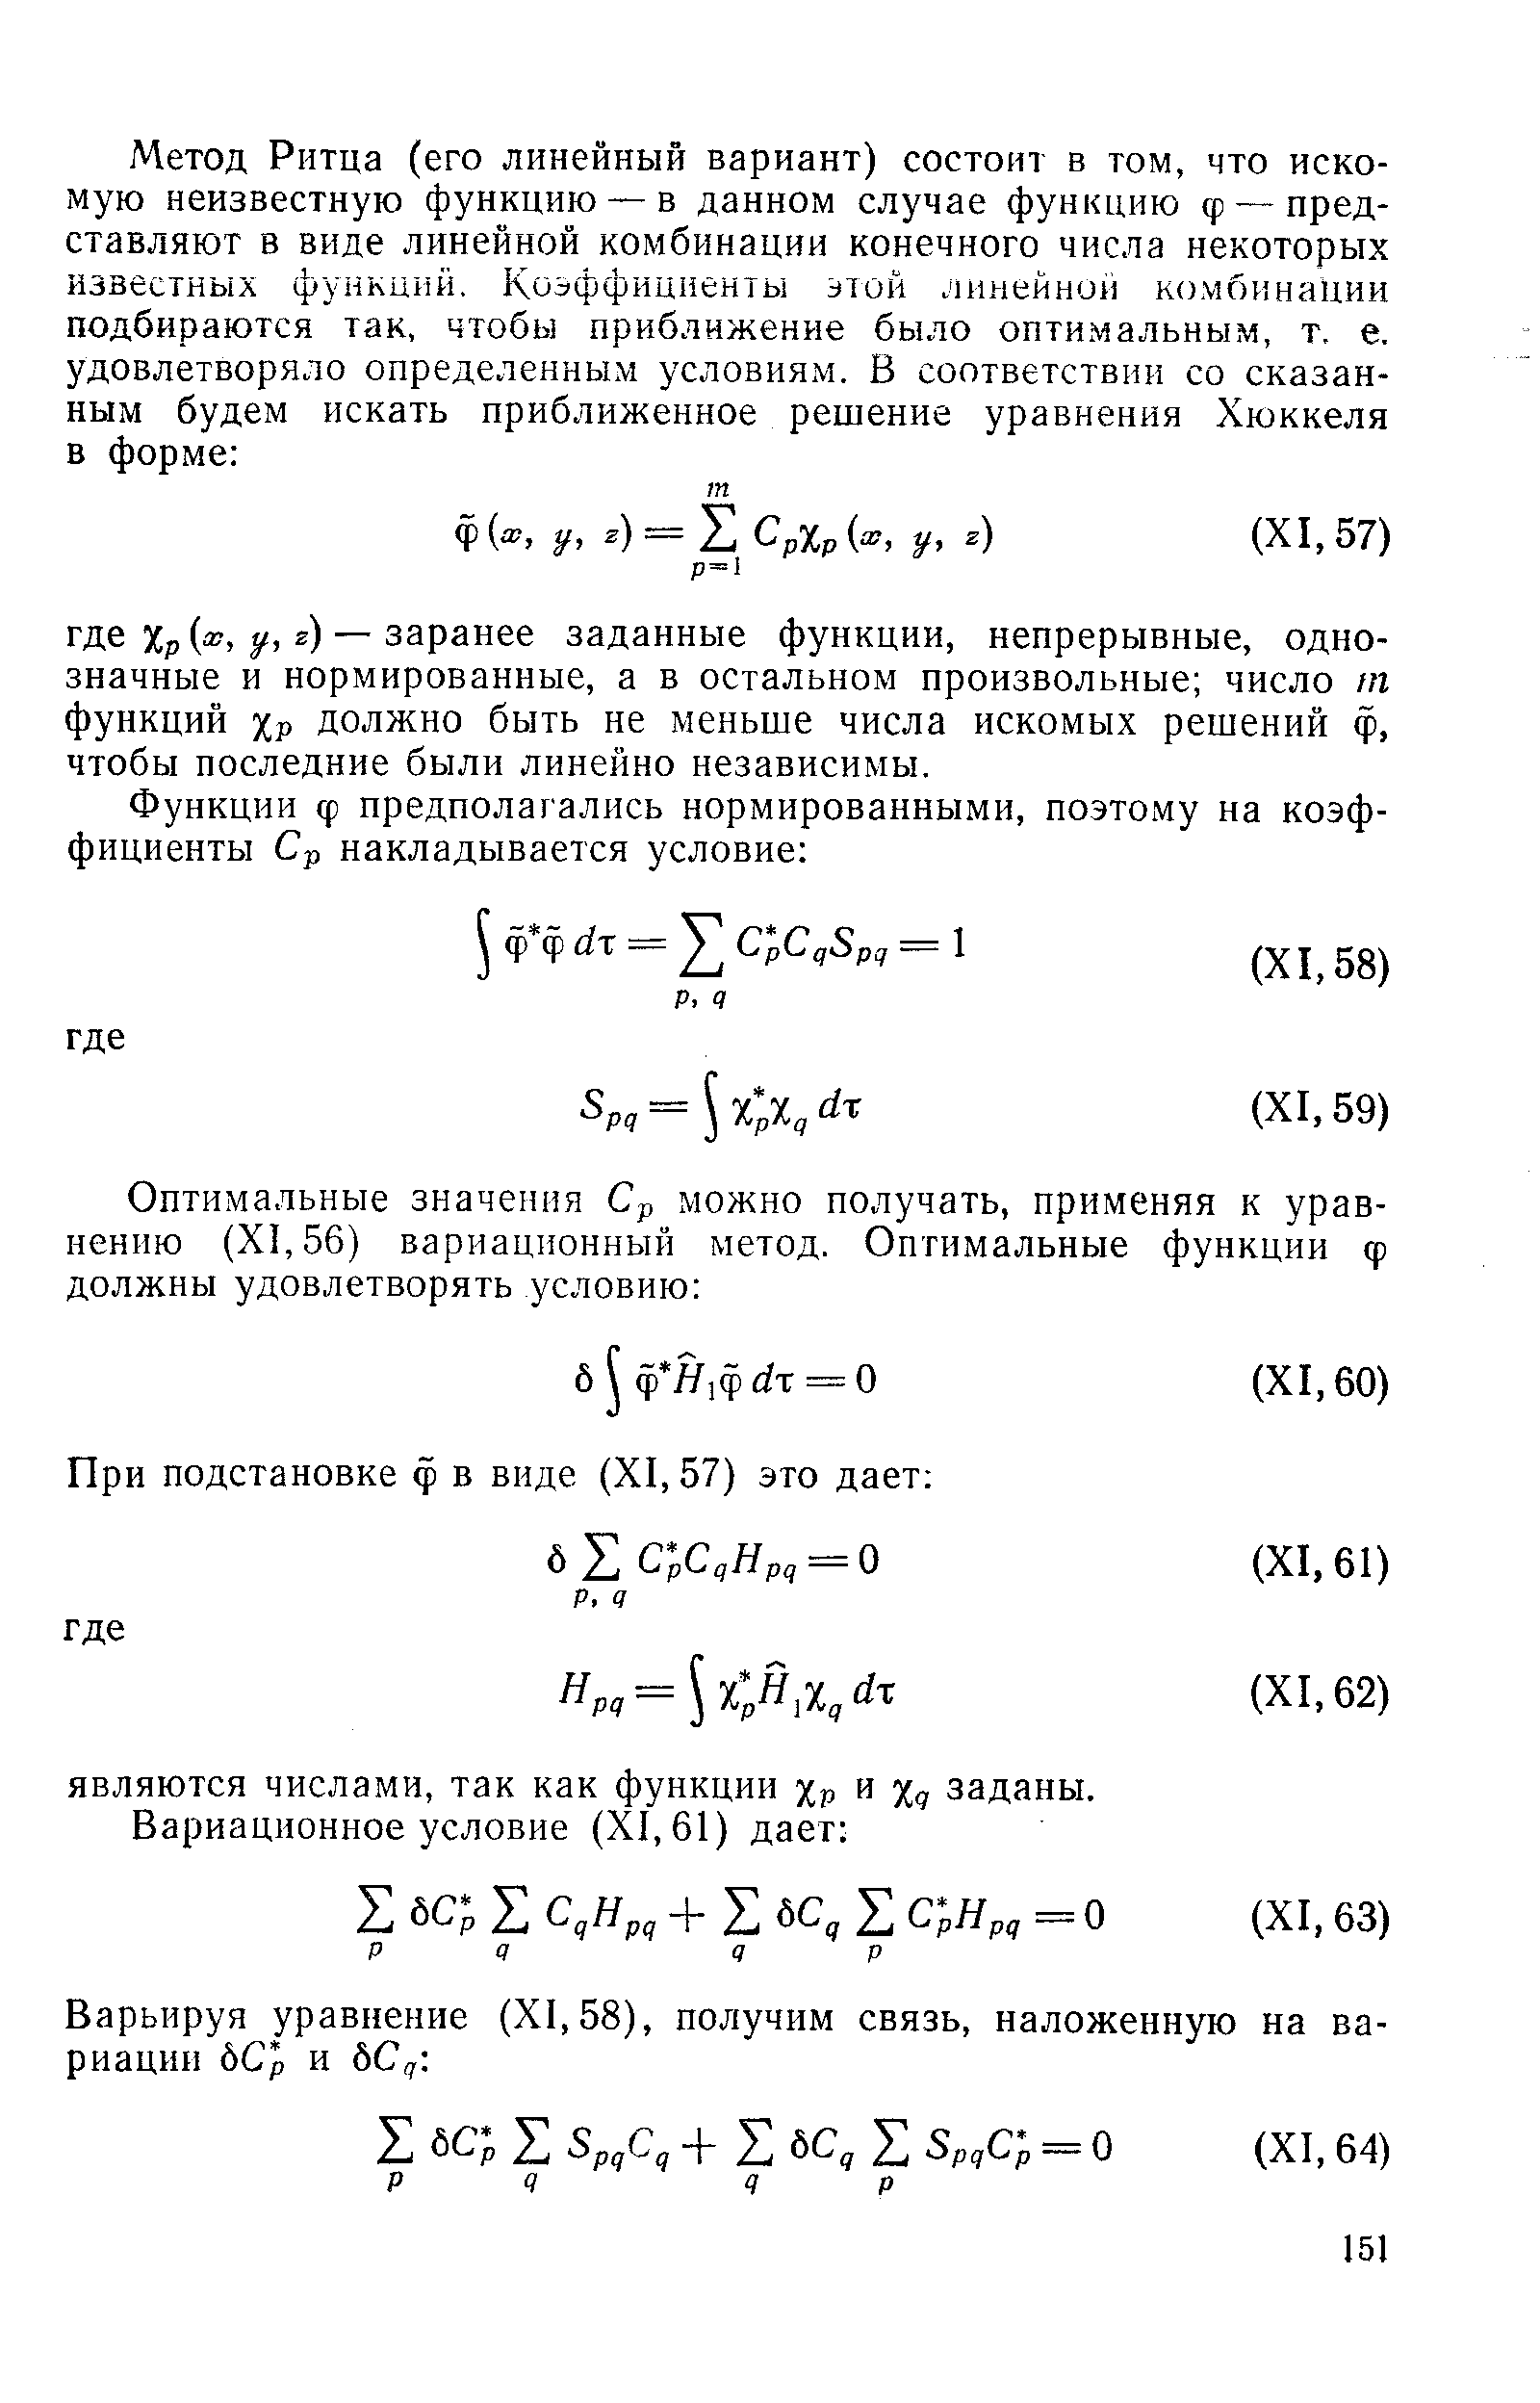 Варьируя уравнение (XI, 58), получим связь, наложенную на вариации бСр и ЬСд. 